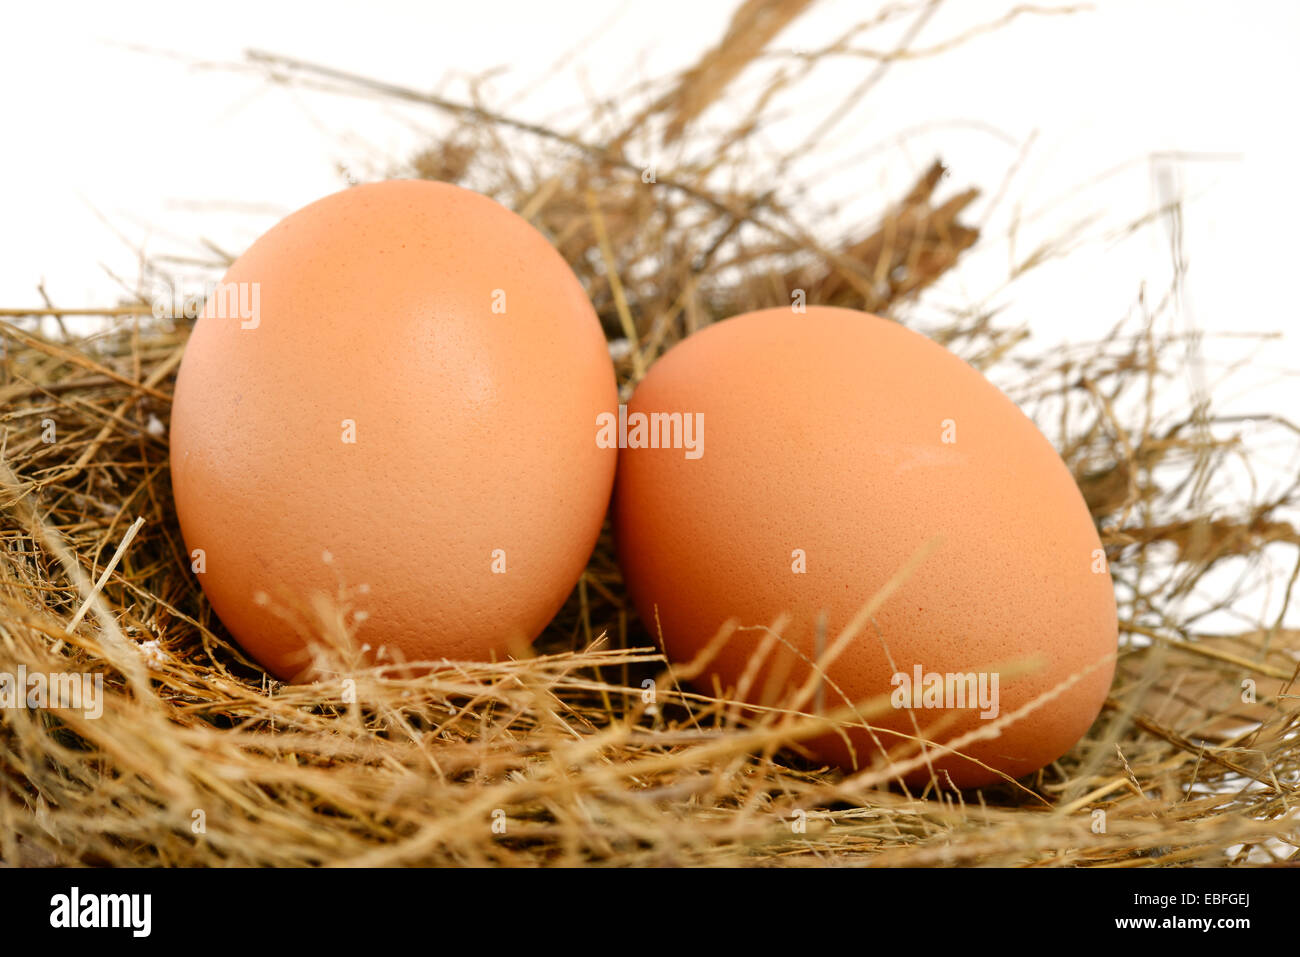 Los huevos de pollo en el nido Foto de stock